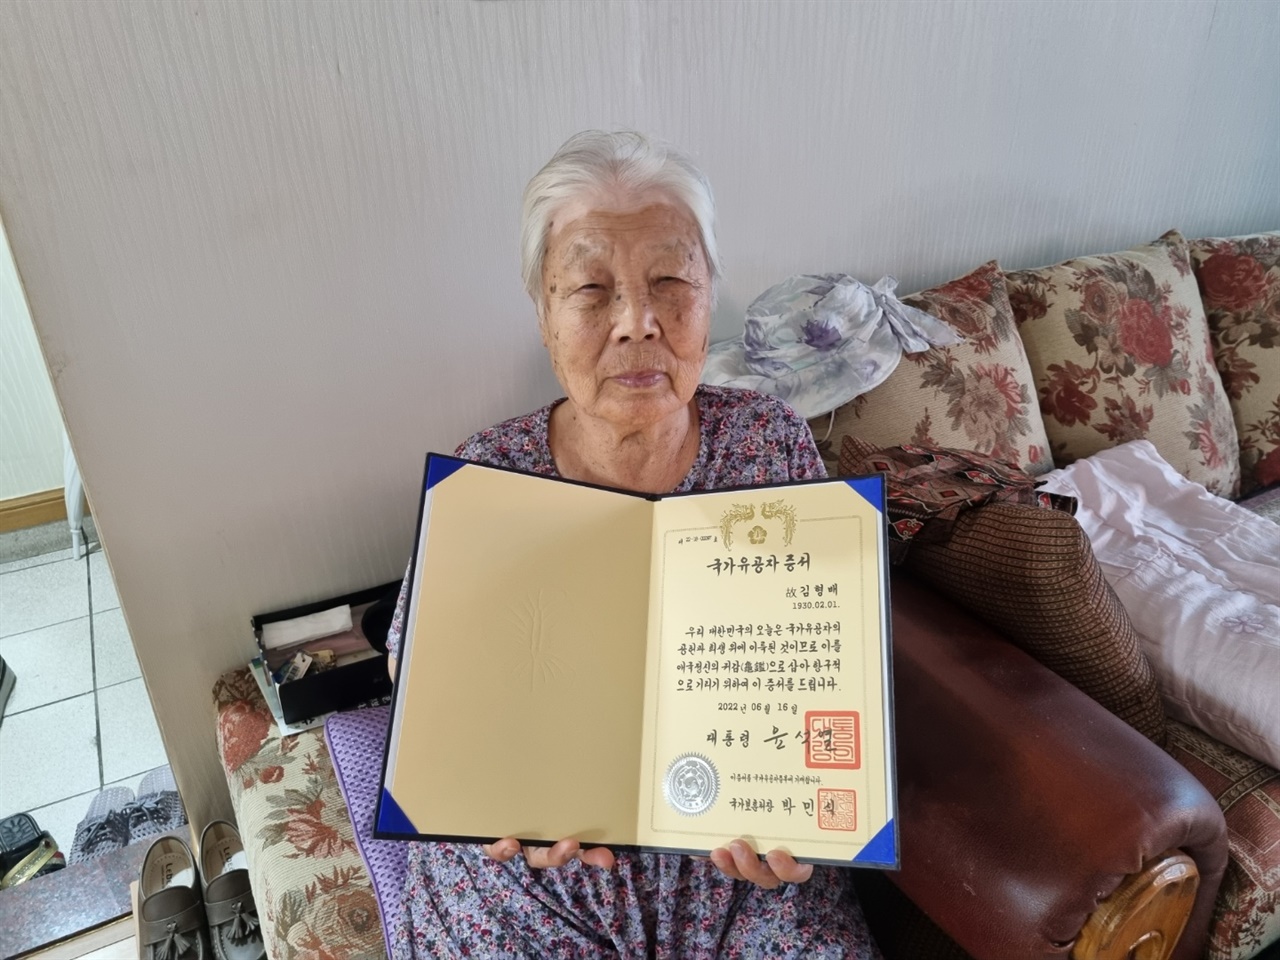 할아버지의 국가유공자 증서를 안고 있는 할머니의 모습.